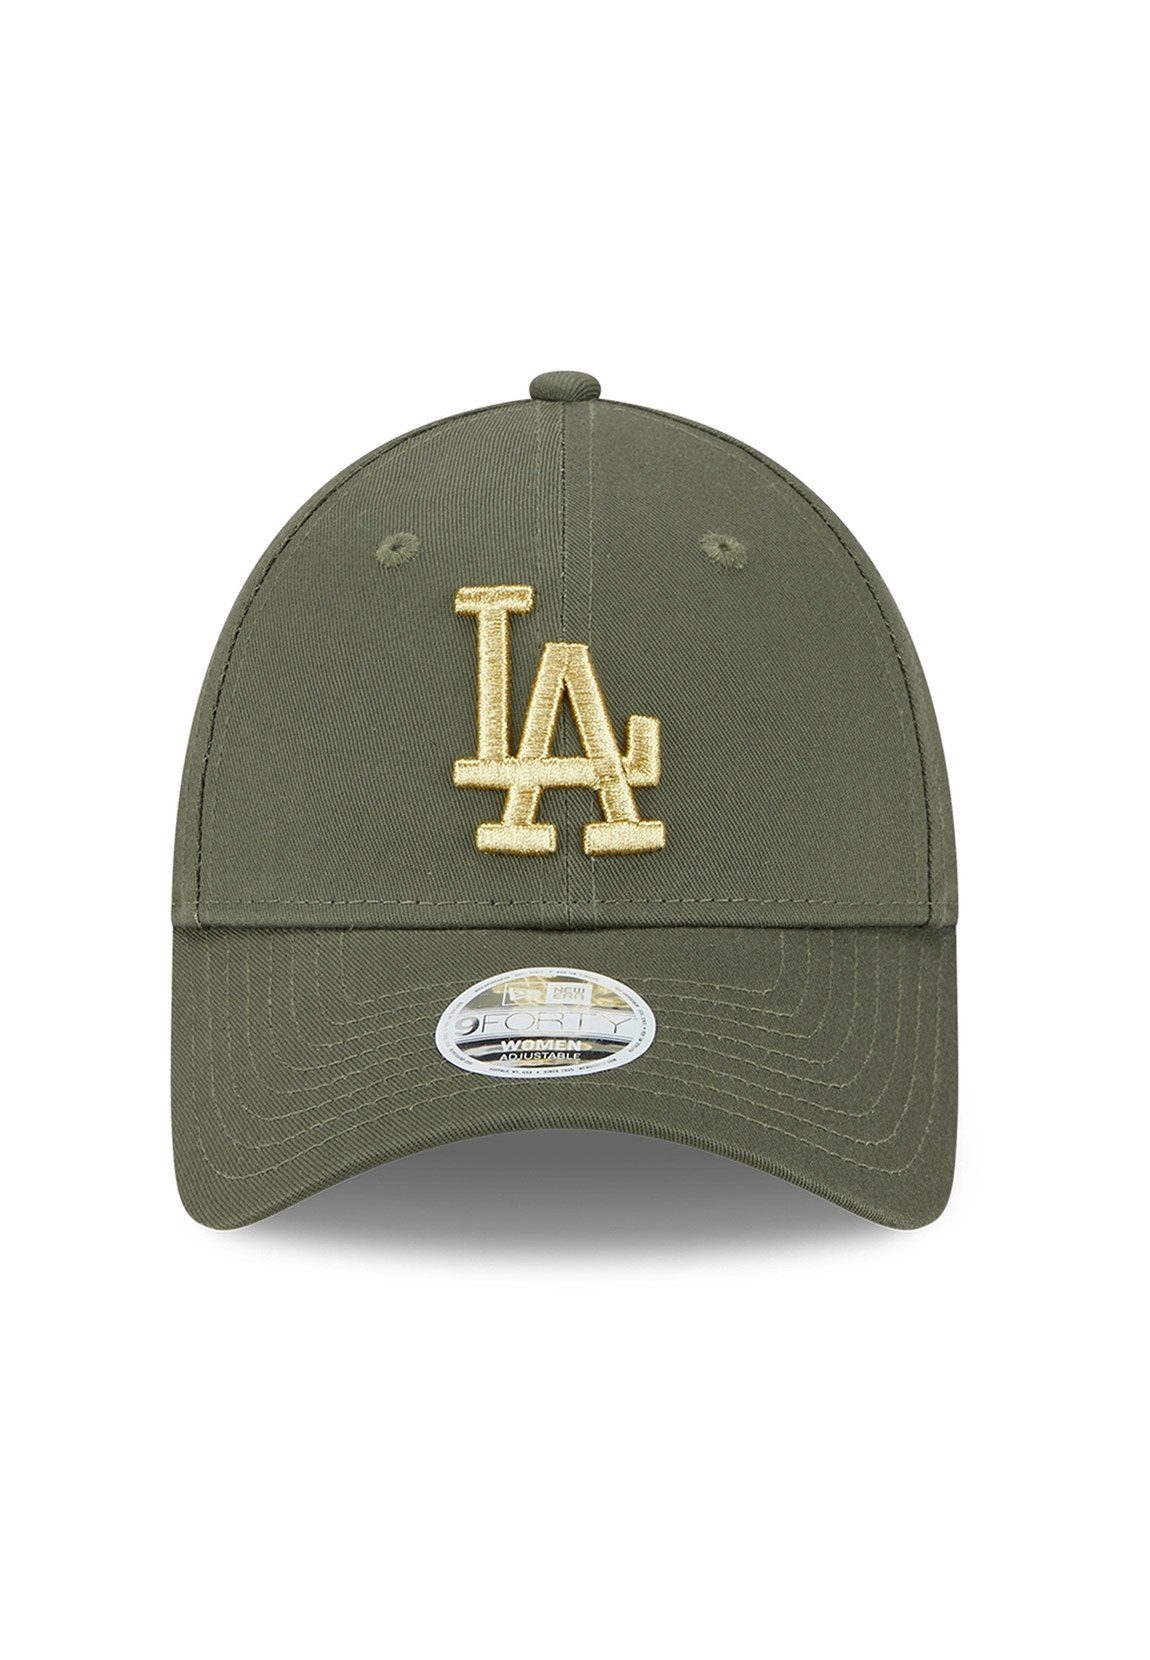 DODGERS New Baseball Metallic Wmns Damen Era Era Logo LA Adjustable 9Forty New Cap Cap